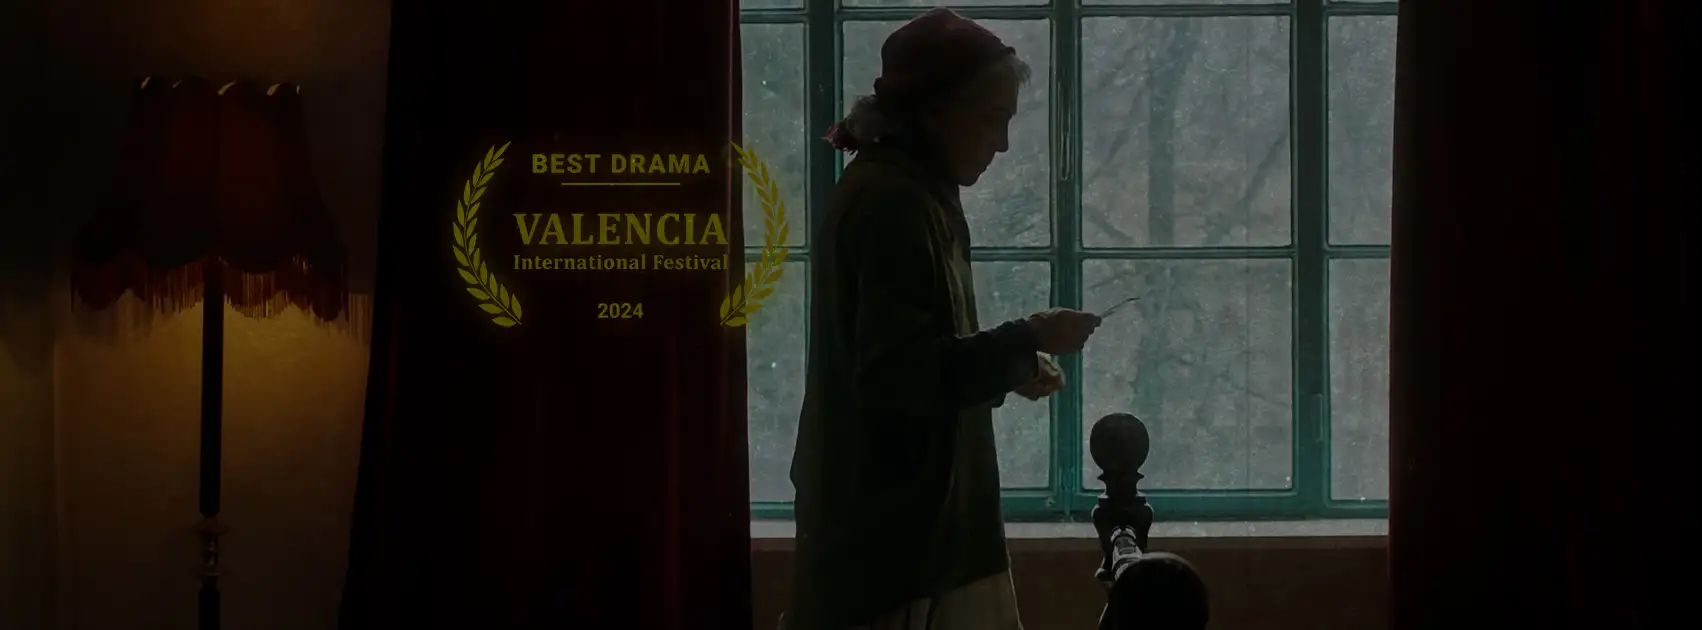 Il corto "She was a star" di Neshat Shabani vince al Valencia International Film Festival